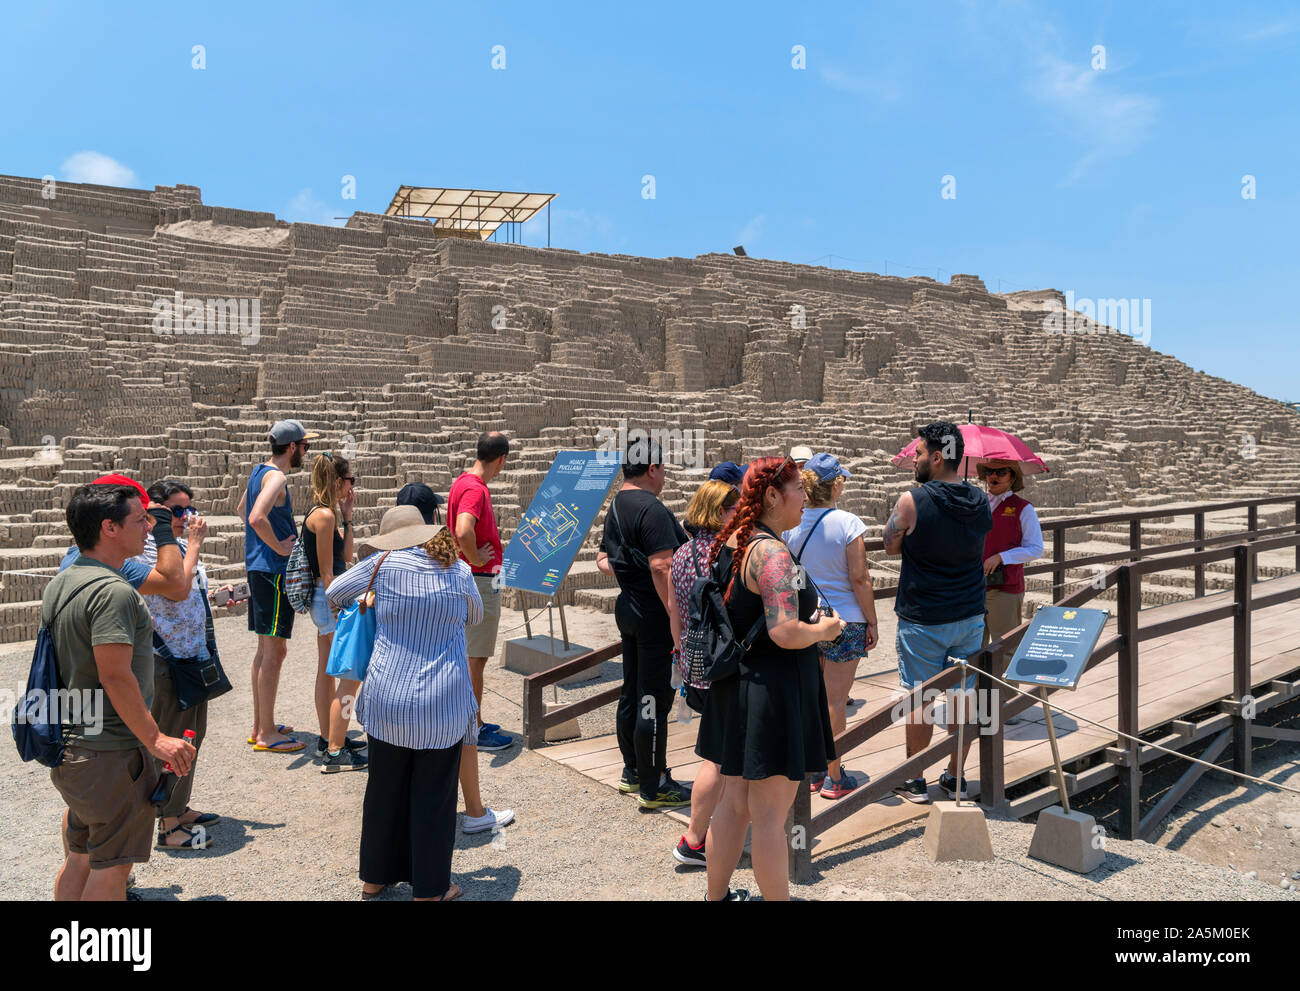 Huaca Pucllana, Lima. Visitantes en una visita guiada a las ruinas de Huaca Pucllana, una pirámide de adobe que data de alrededor del año 400 DC, Miraflores, Lima, Perú, por lo que Foto de stock